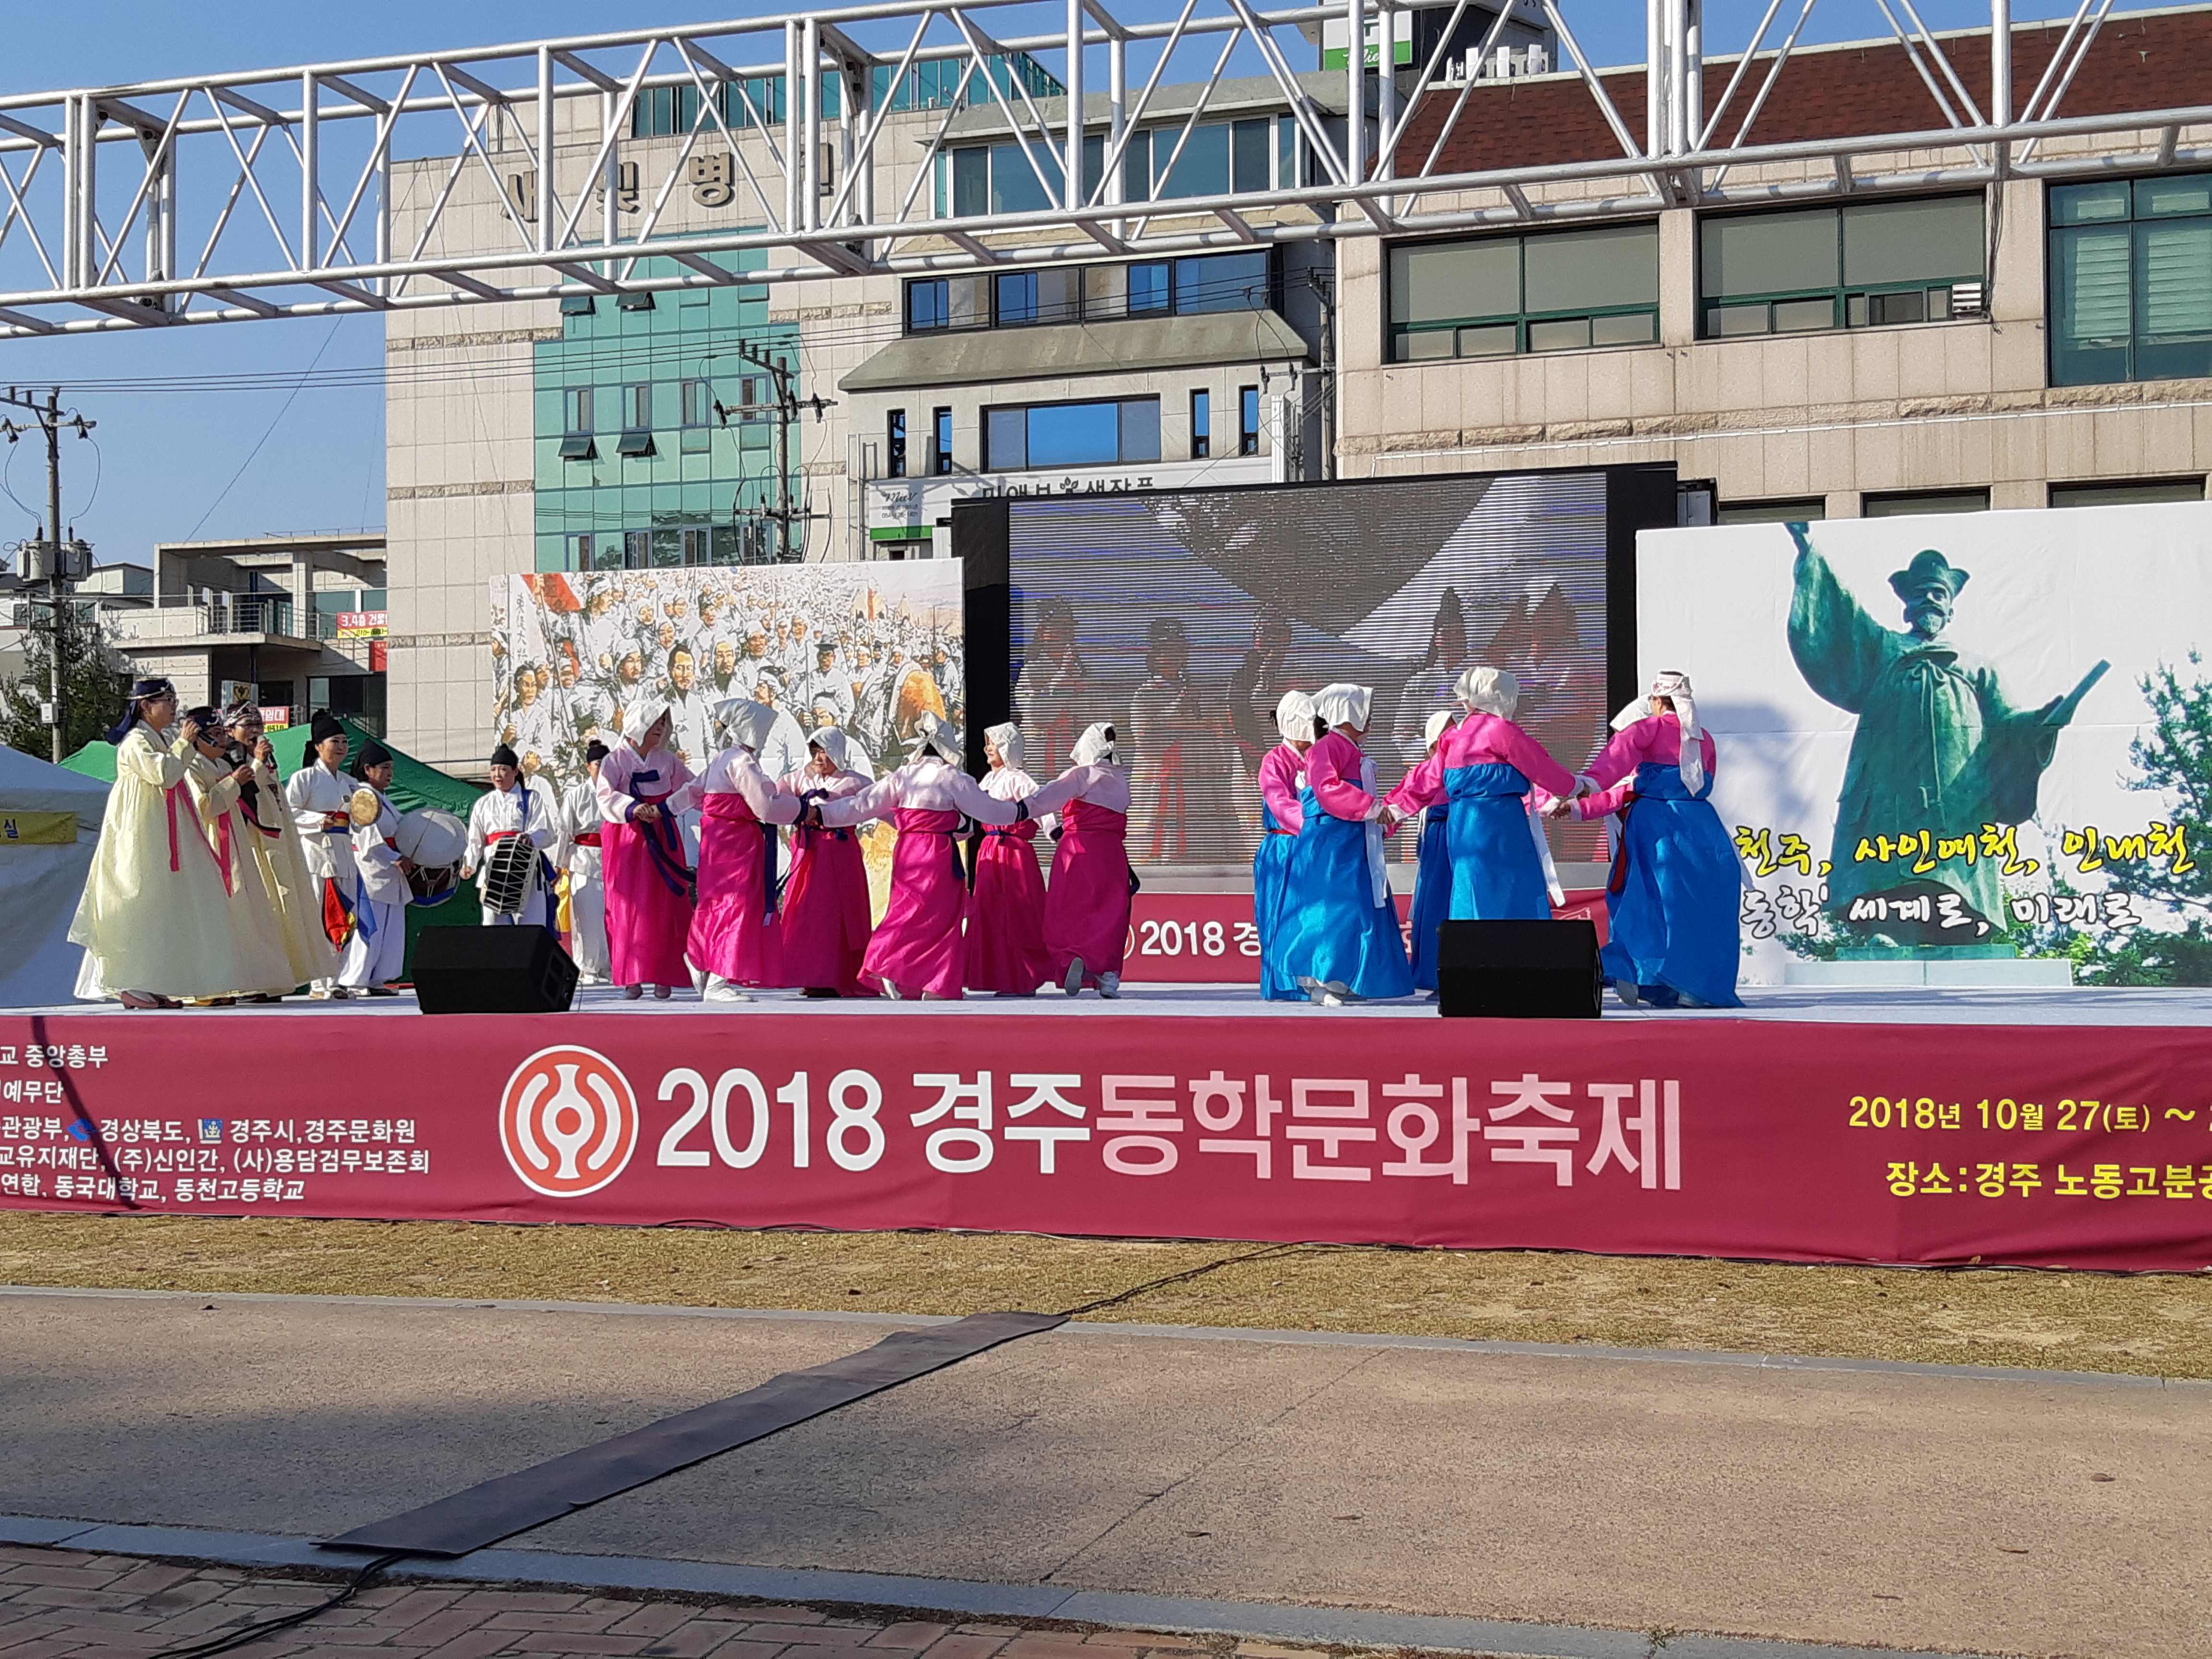 2018 경주동학문화축제 공연모습 이미지